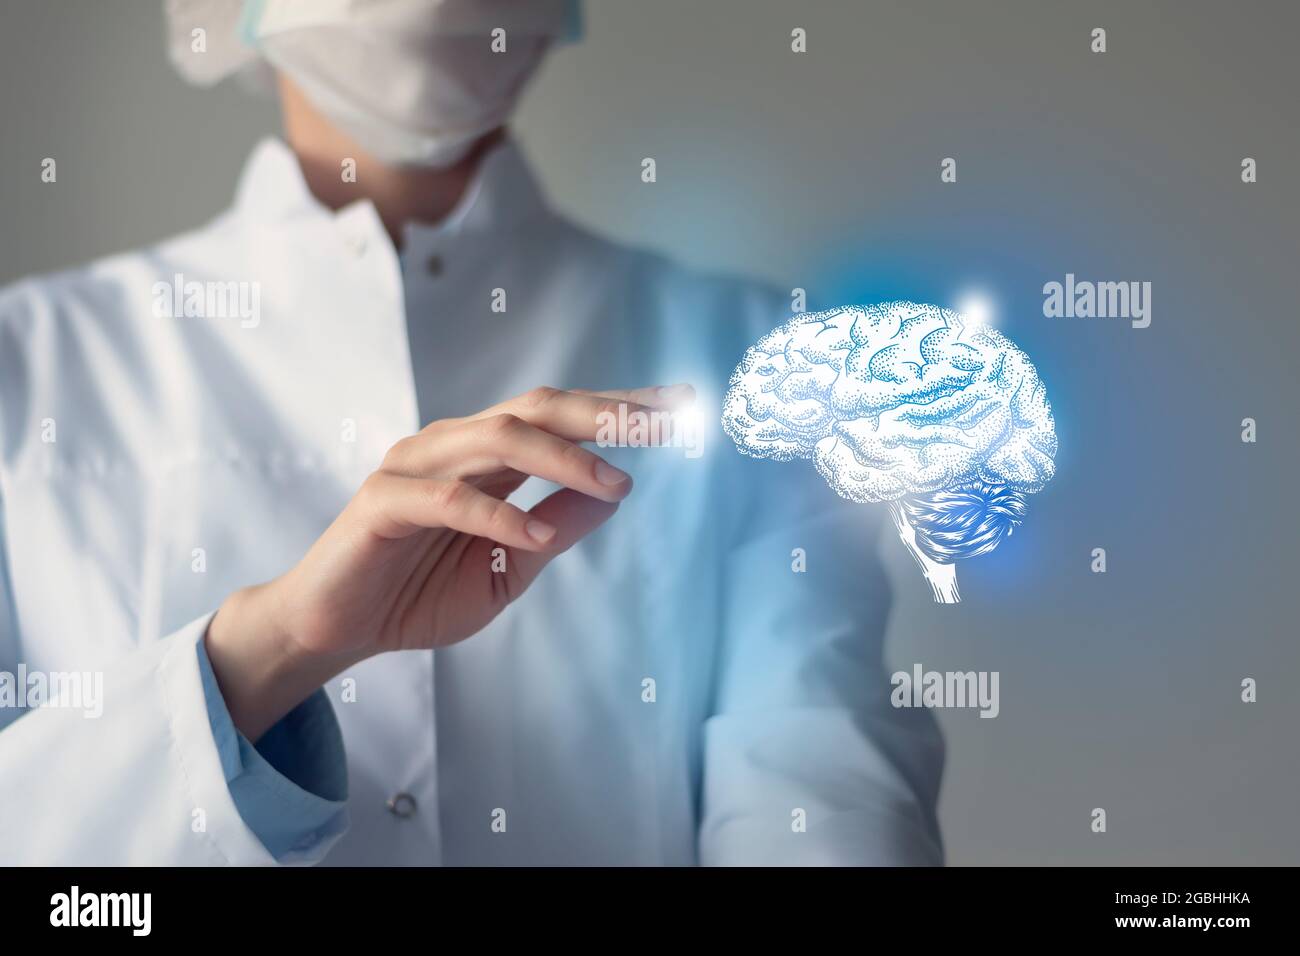 Le médecin féminin touche le cerveau virtuel en main. Photo floue, organe humain de la main, surligné en bleu comme symbole de rétablissement. Service hospitalier de soins de santé Banque D'Images